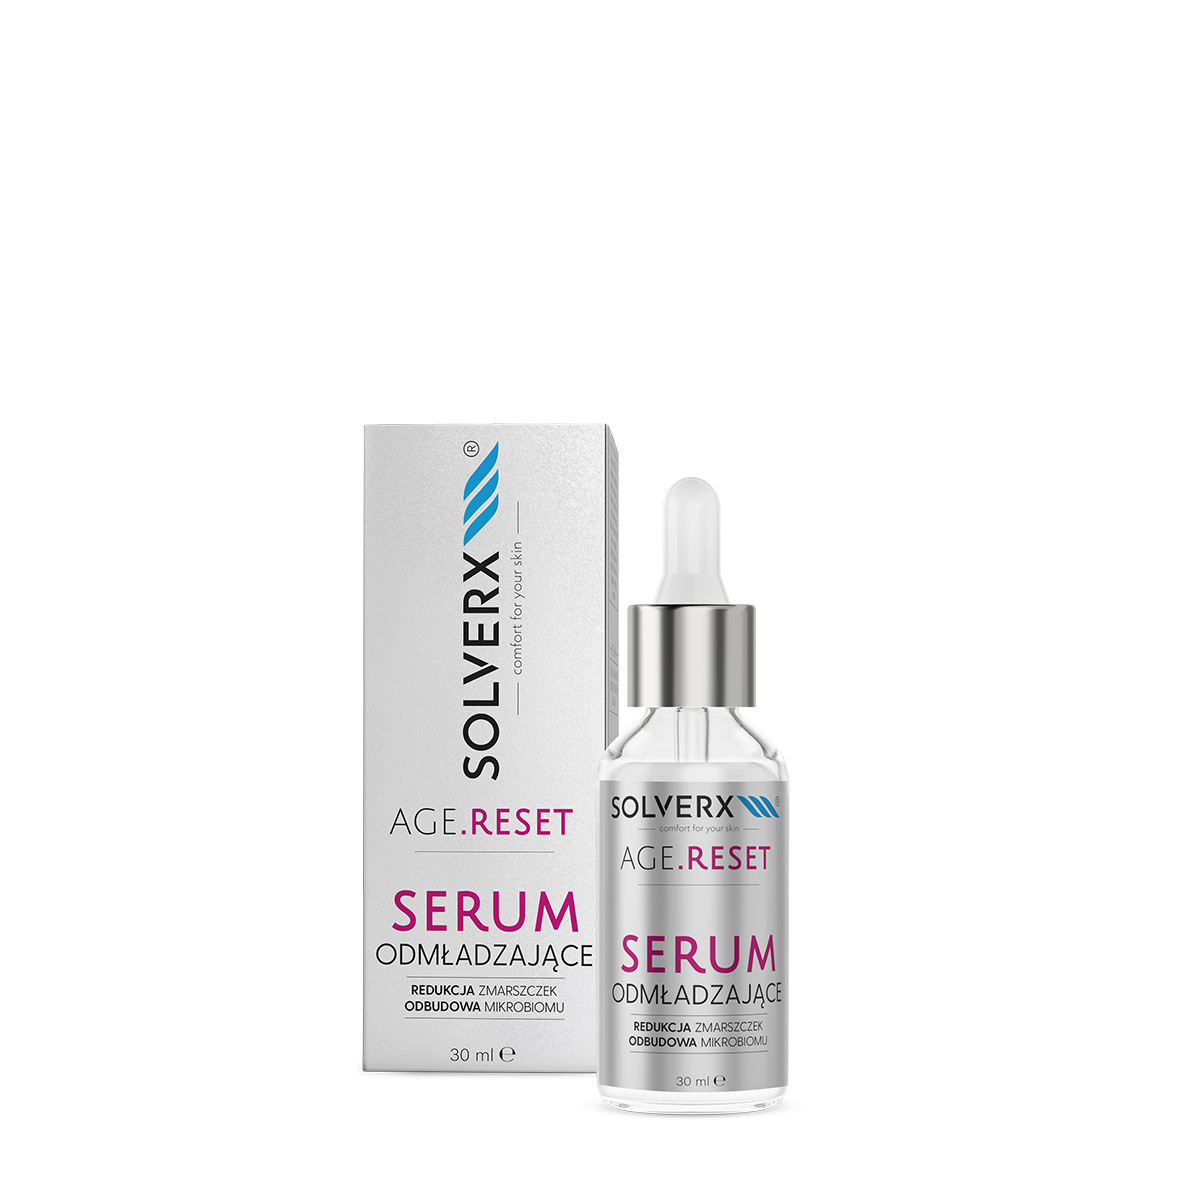 SOLVERX AGE RESET serum odmladzajace www